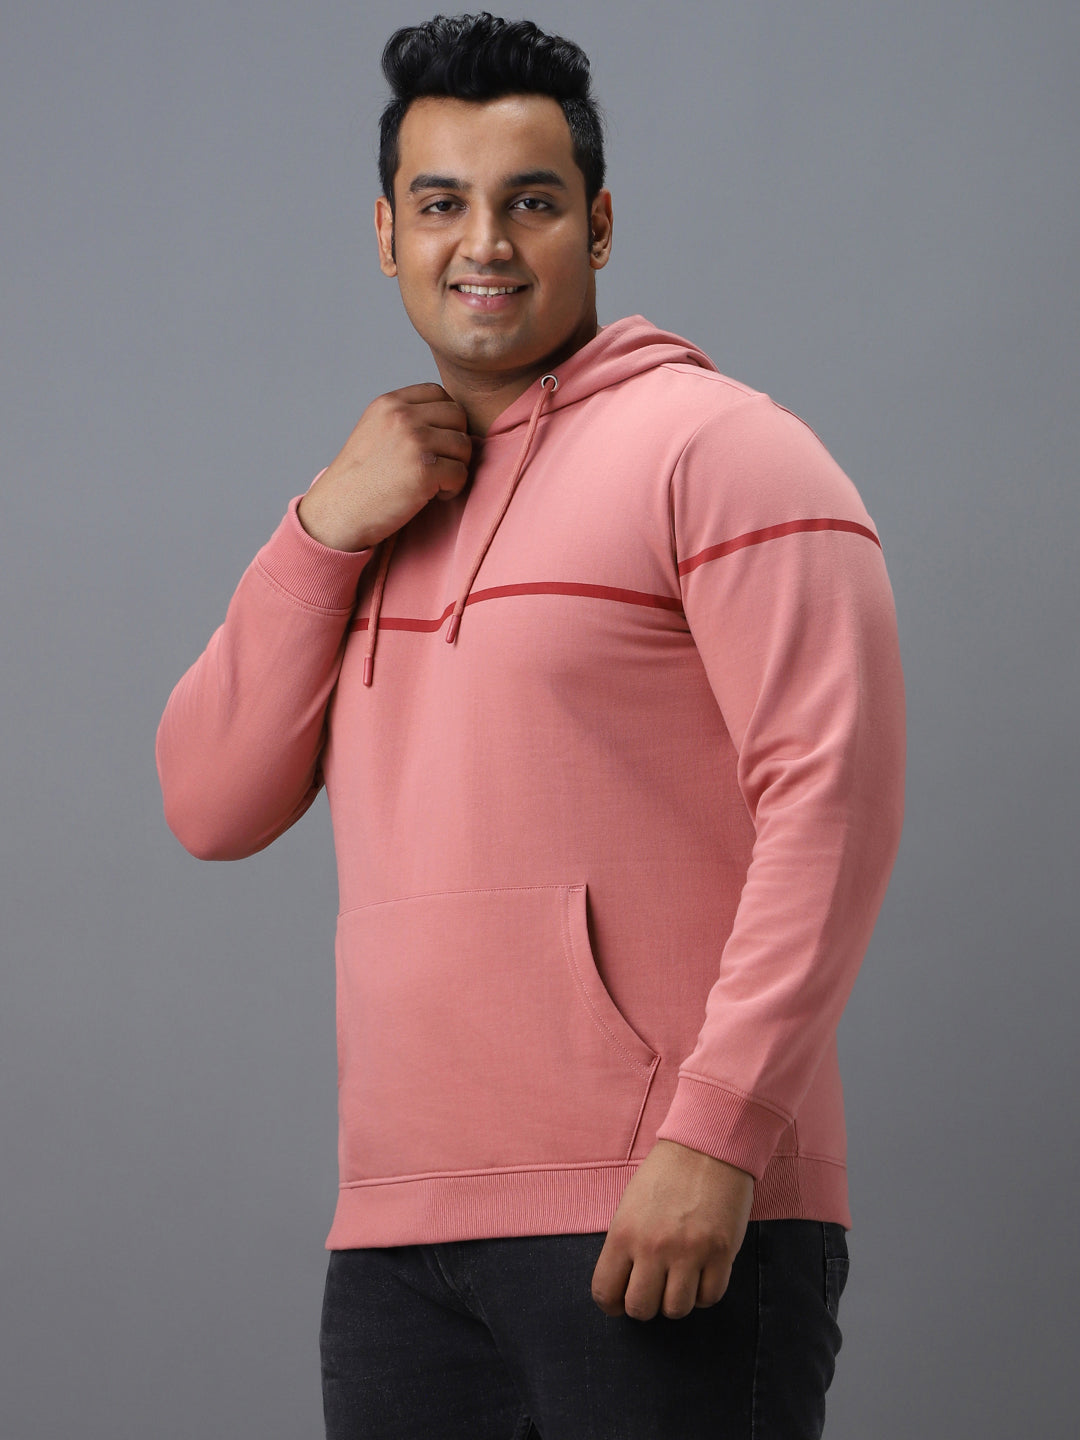 Plus Men's Pink Cotton Solid Hooded Neck Sweatshirt